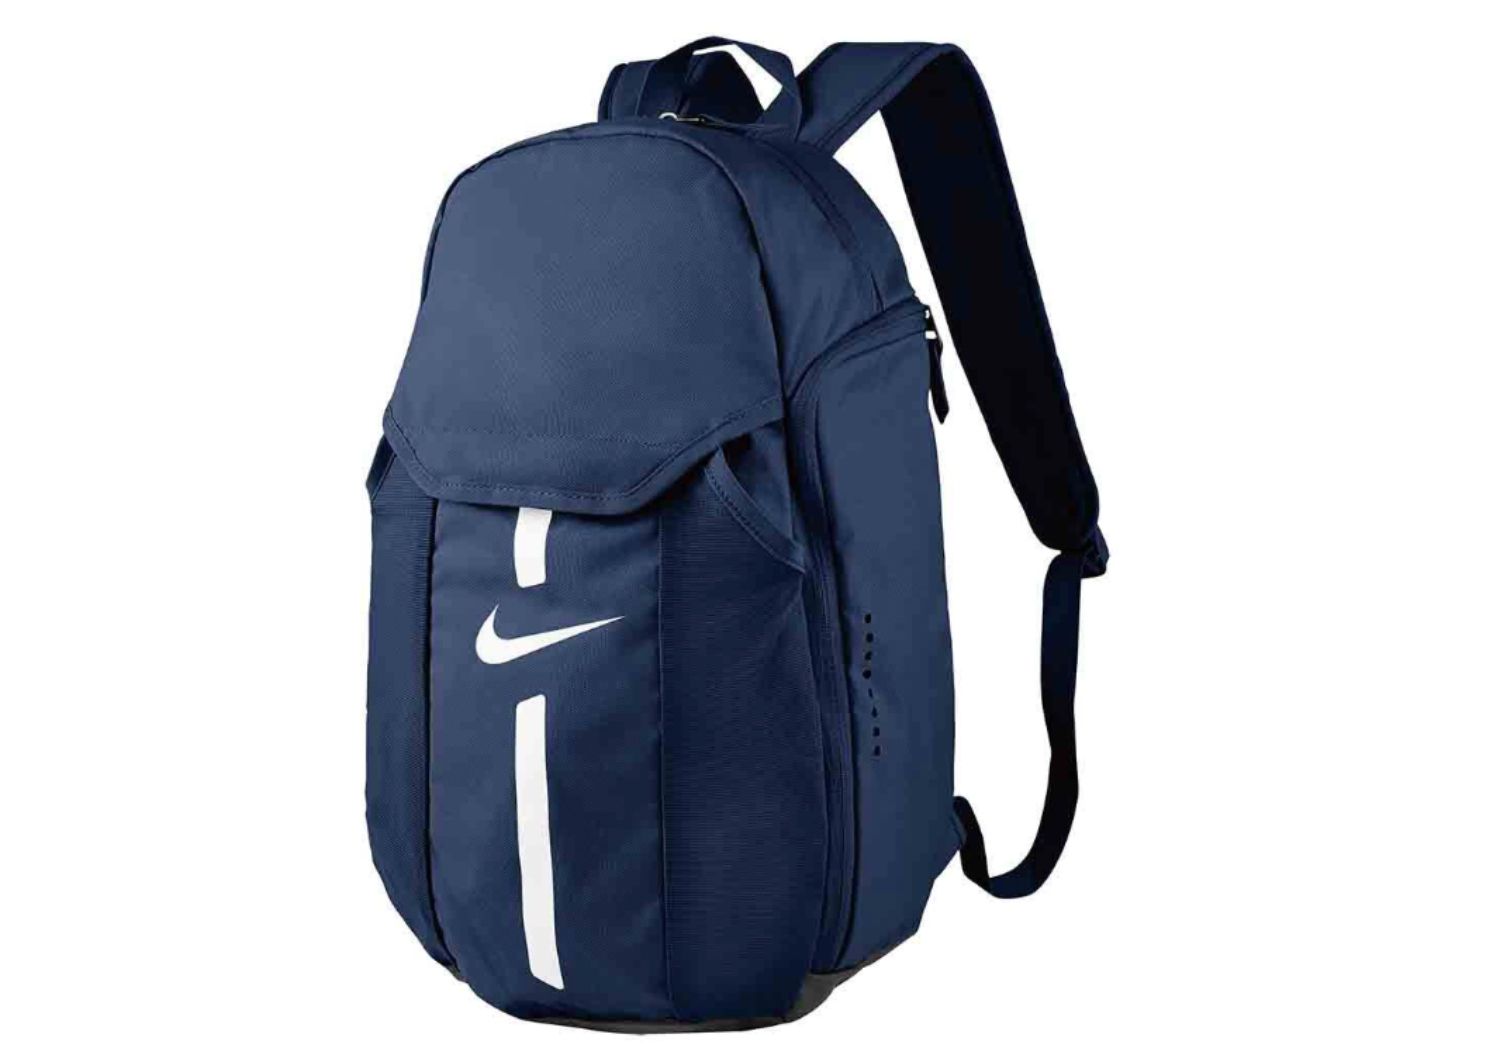 Una mochila de Nike / LIDL